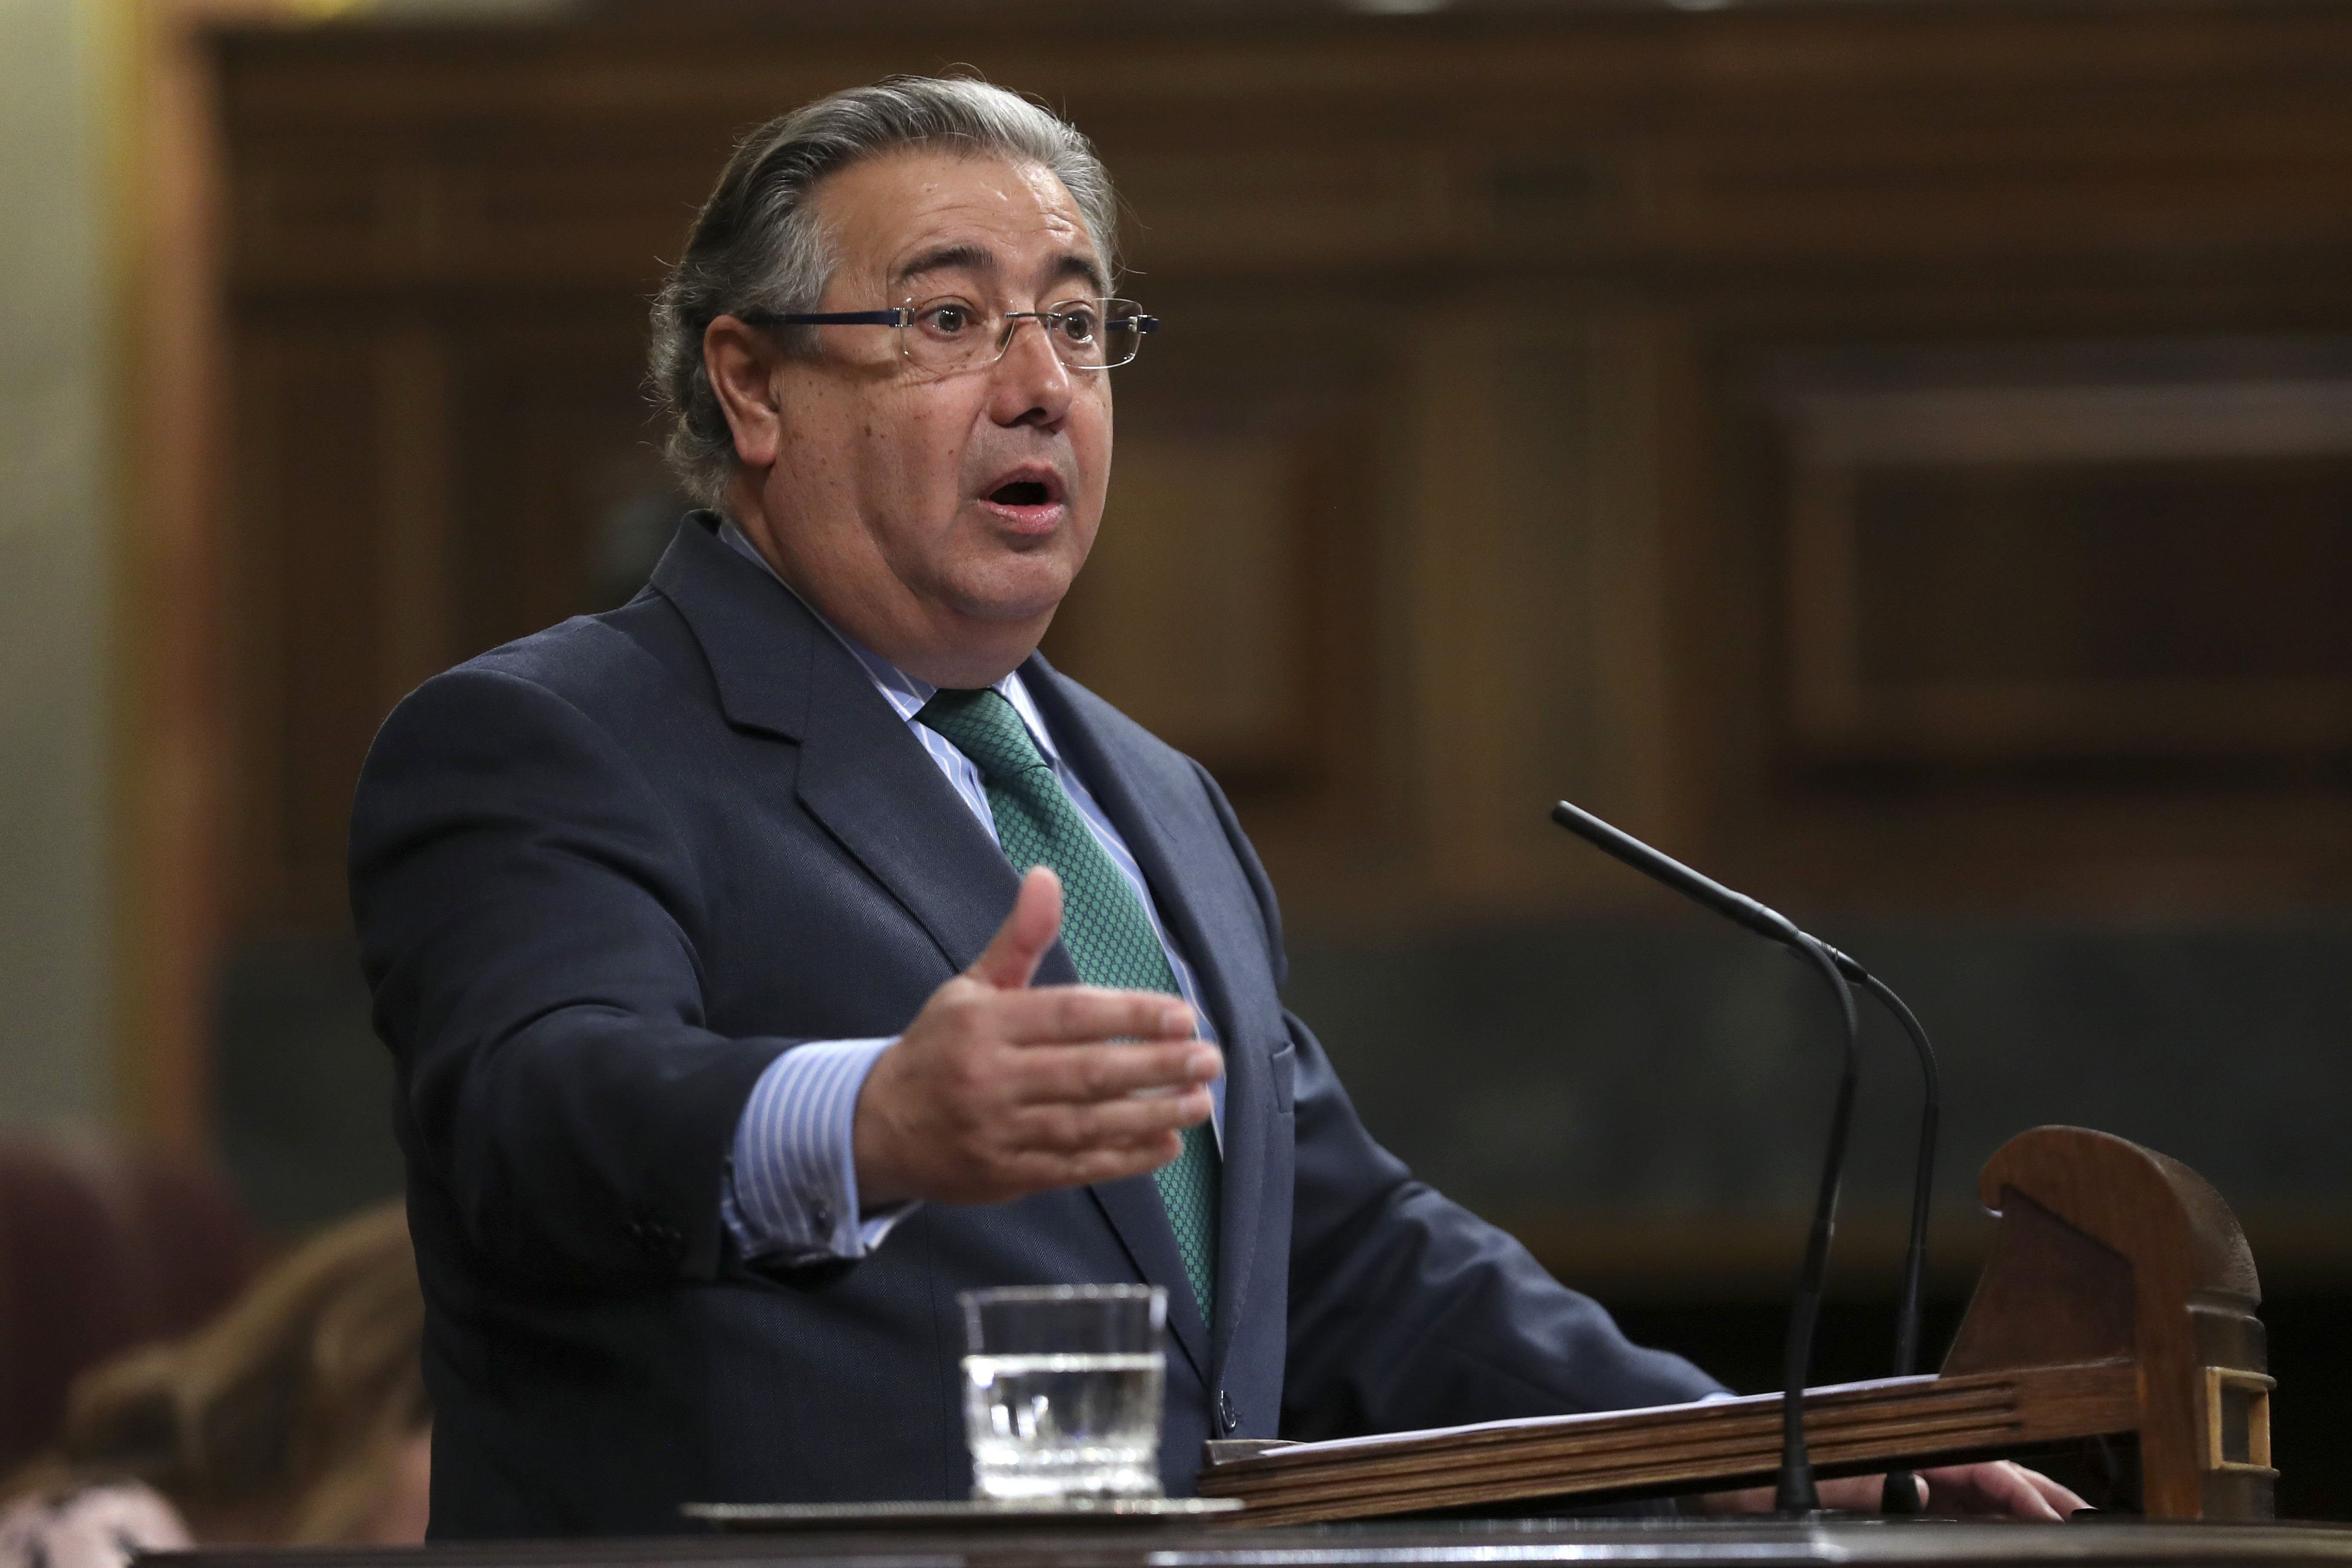 Ignacio González implica el ministre Zoido en l'operació Lezo